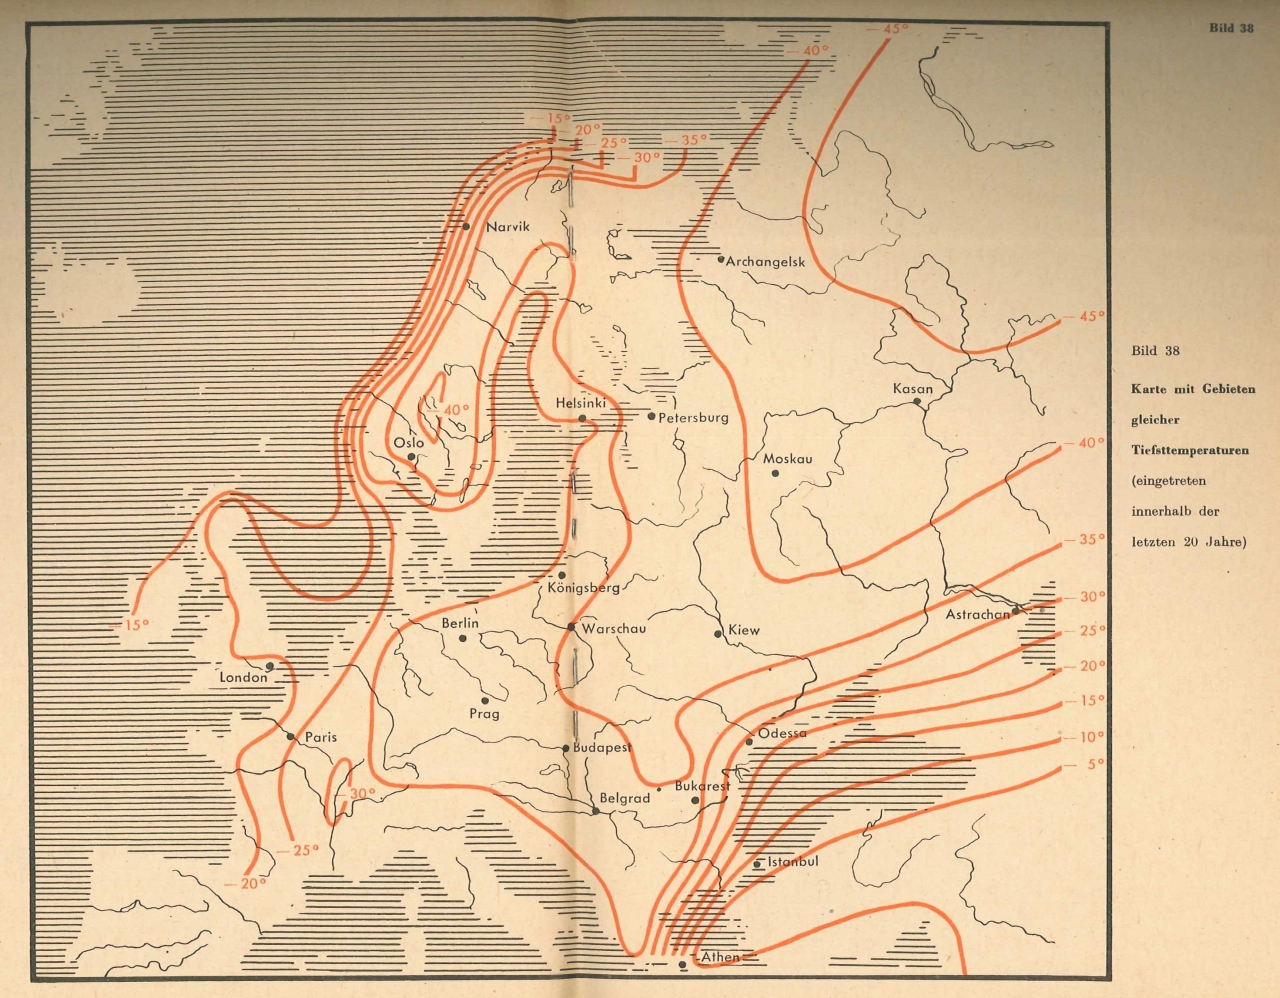 Europa-Karte mit Gebieten gleicher Tiefsttemperaturen, eingetreten innerhalb der letzten 20 Jahre (Ausgabe 1942)